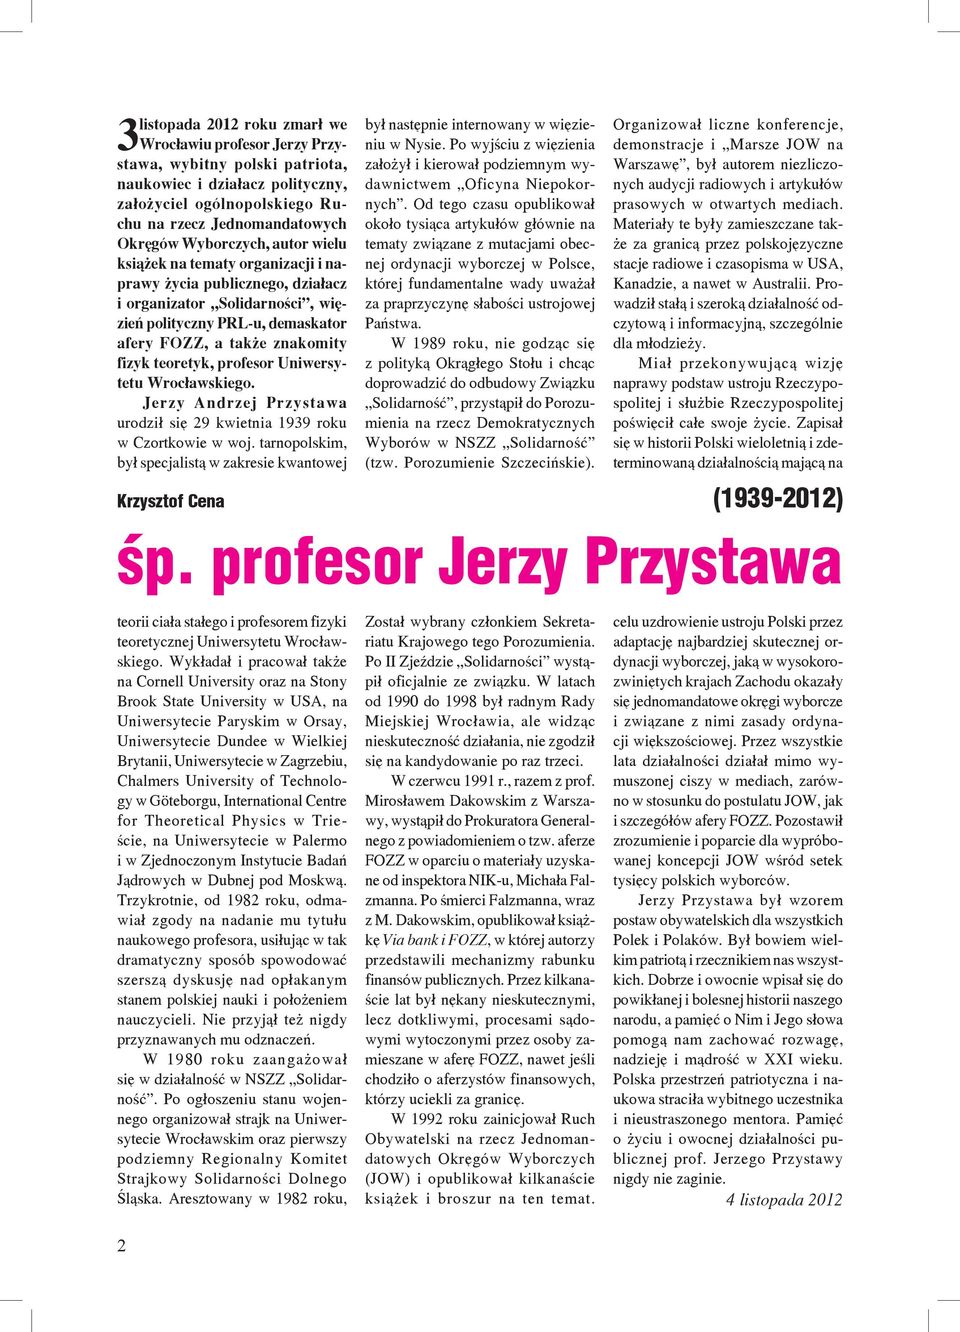 teoretyk, profesor Uniwersytetu Wrocławskiego. Jerzy Andrzej Przystawa urodził się 29 kwietnia 1939 roku w Czortkowie w woj.